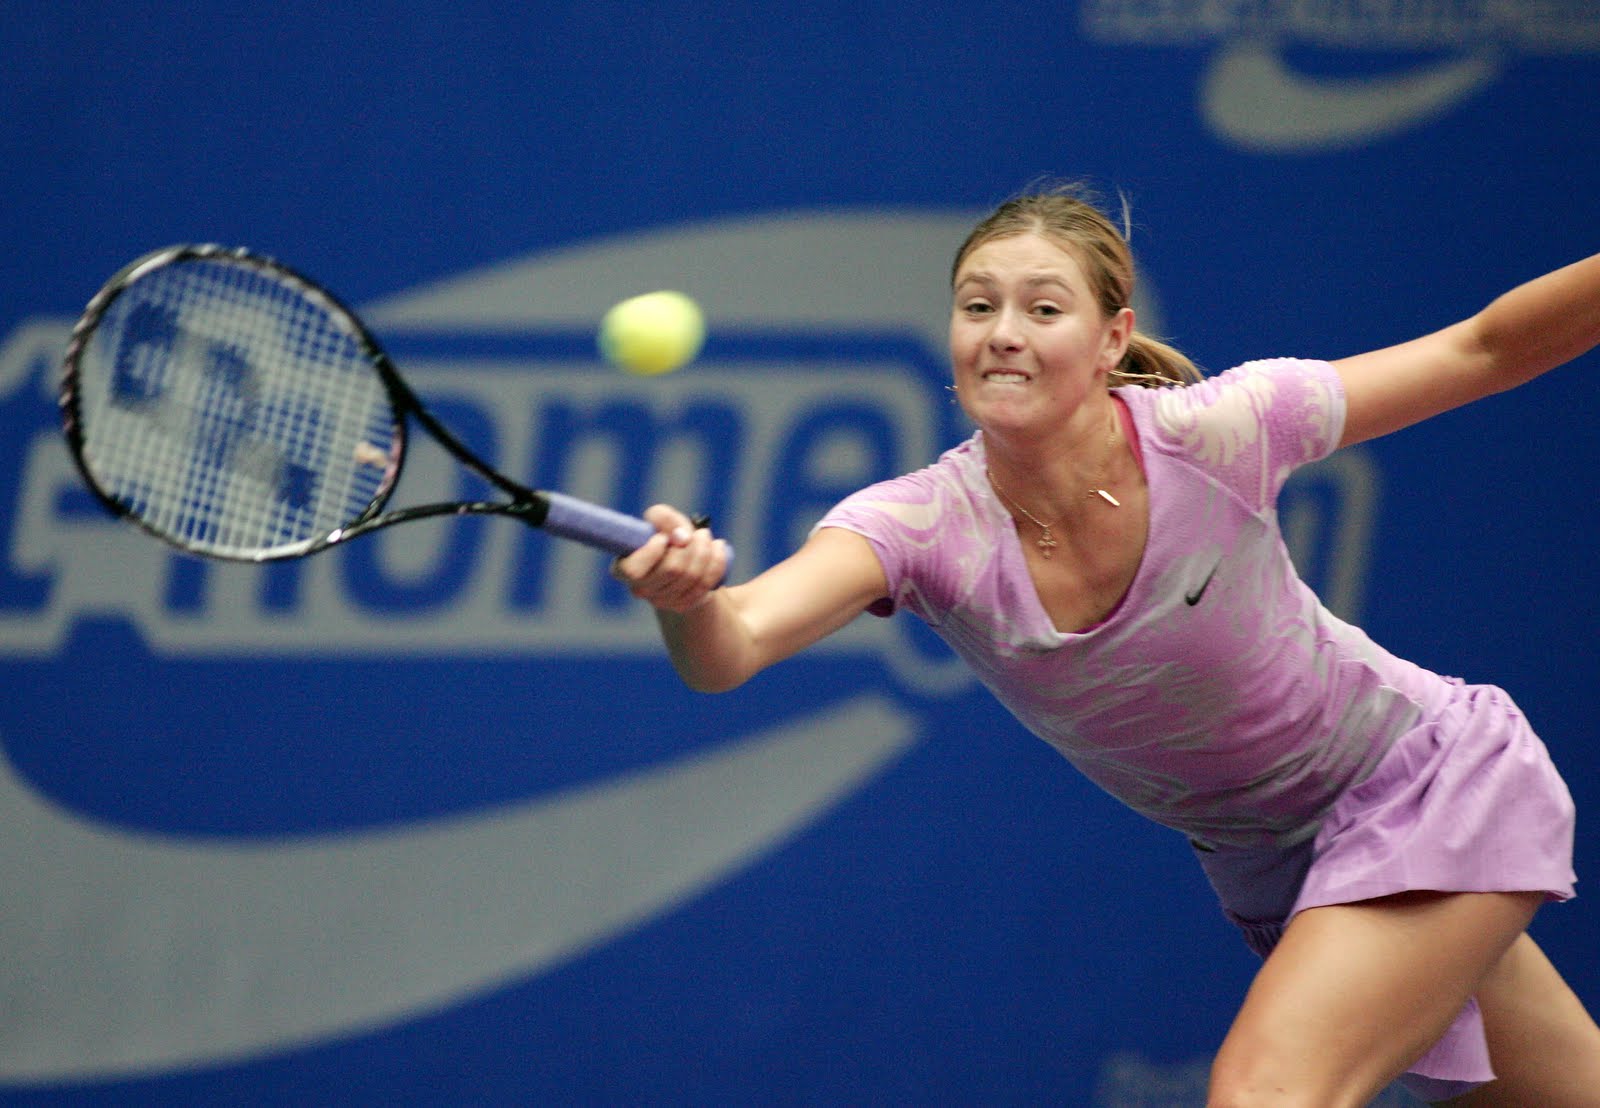 http://2.bp.blogspot.com/-4xMbBPrrP3Y/Ted8DURDZvI/AAAAAAAAAM8/S9B3U_f6D5M/s1600/Maria_Sharapova_Generali_Ladies_WTA_Tournament_Final8.jpg